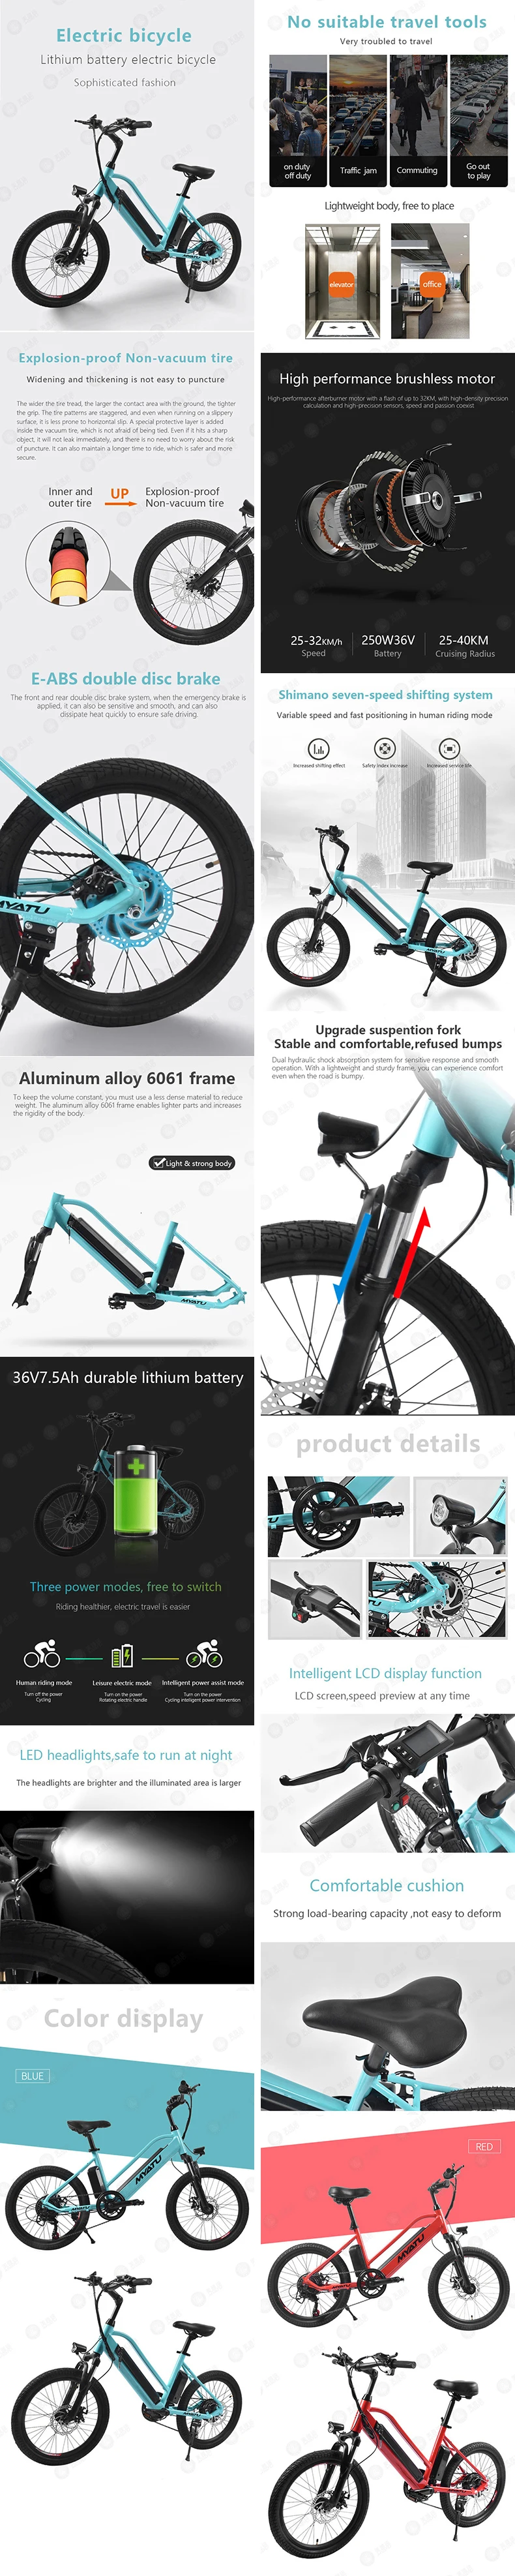 [MYATU] Европейский Сток, Ebike, новинка, Электрический пляжный велосипед, помогает горному велосипеду, внедорожный велосипед, ролик Fury Lithiu, мощный велосипед